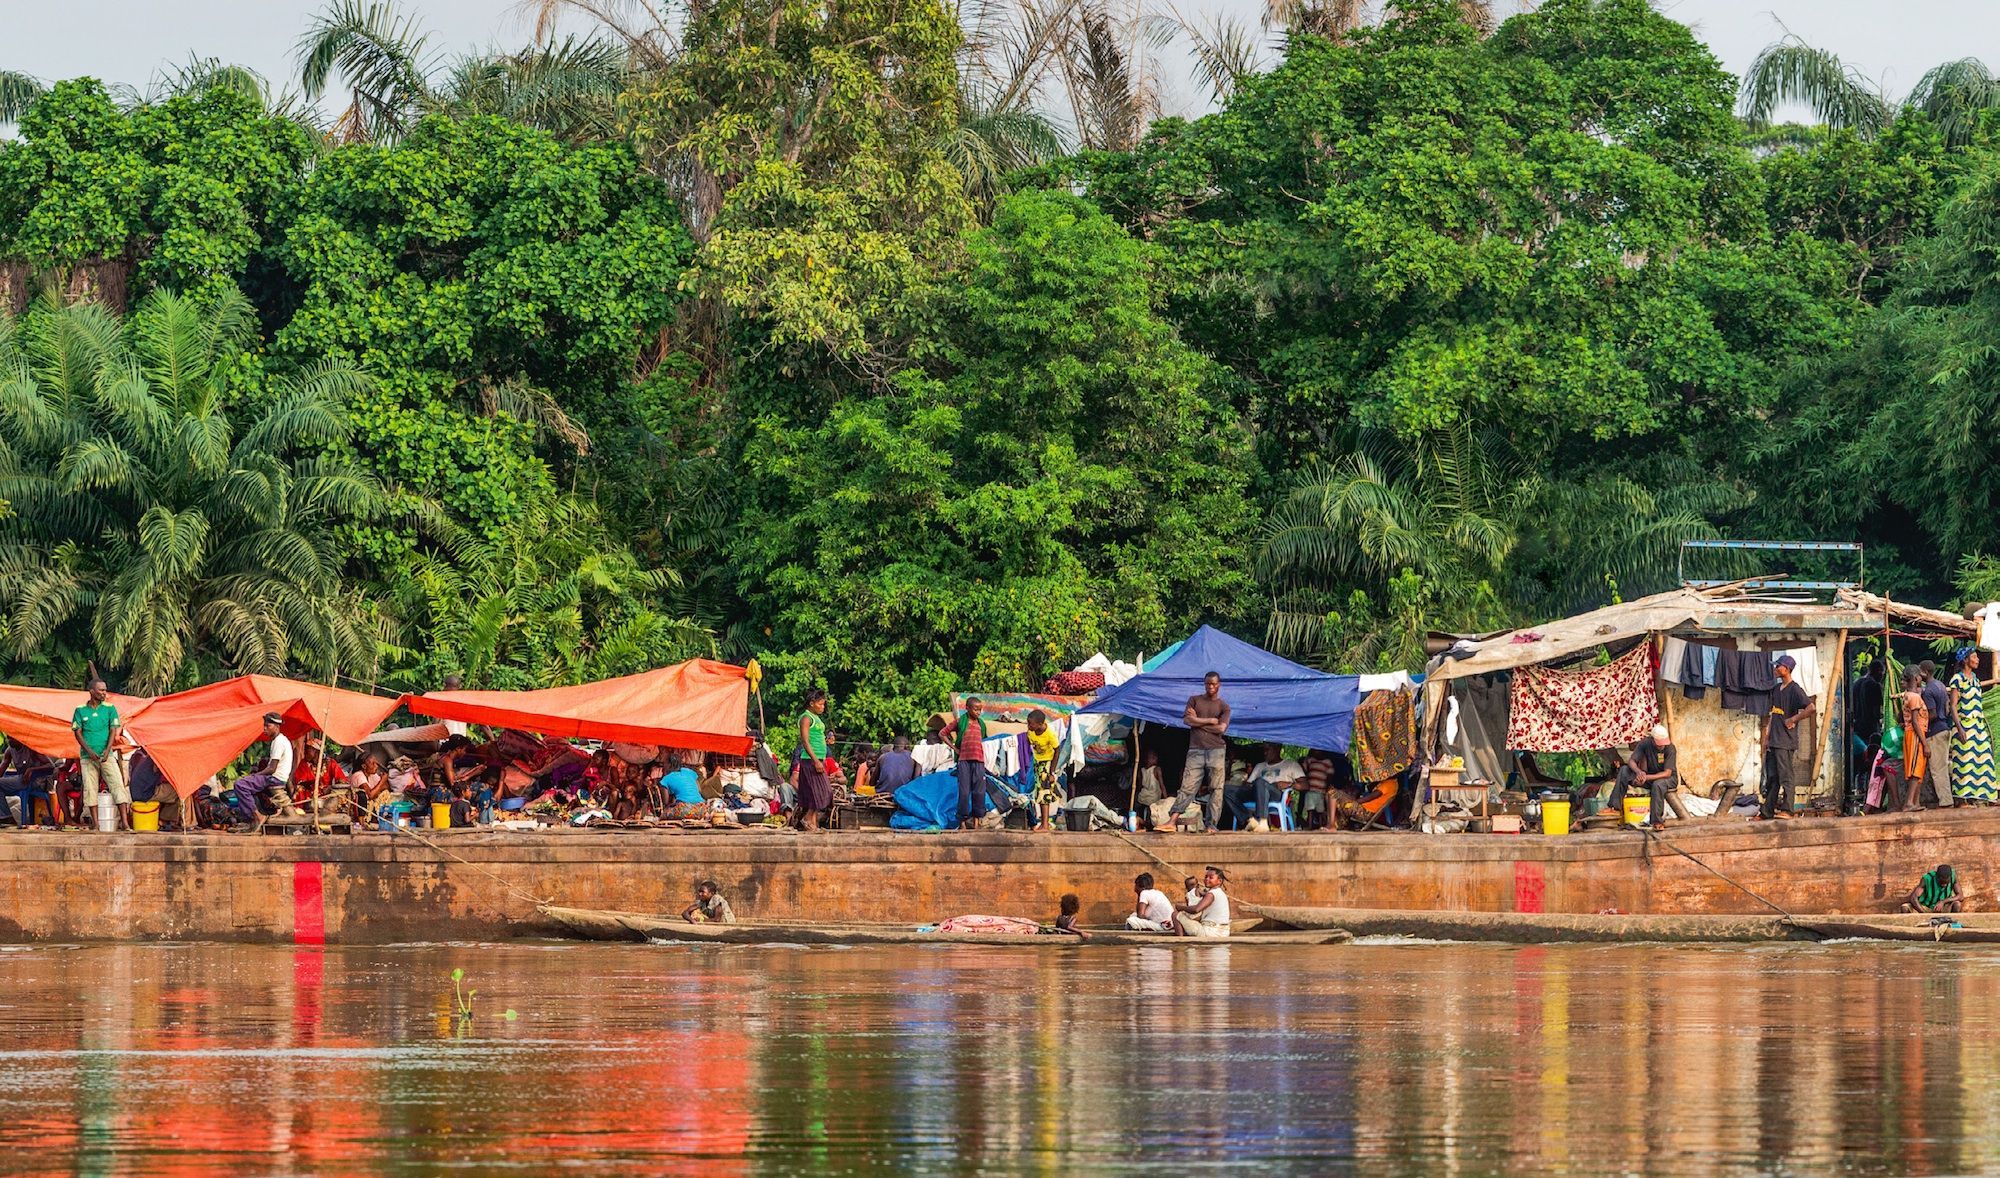 Résultat de recherche d'images pour "le fleuve Congo"